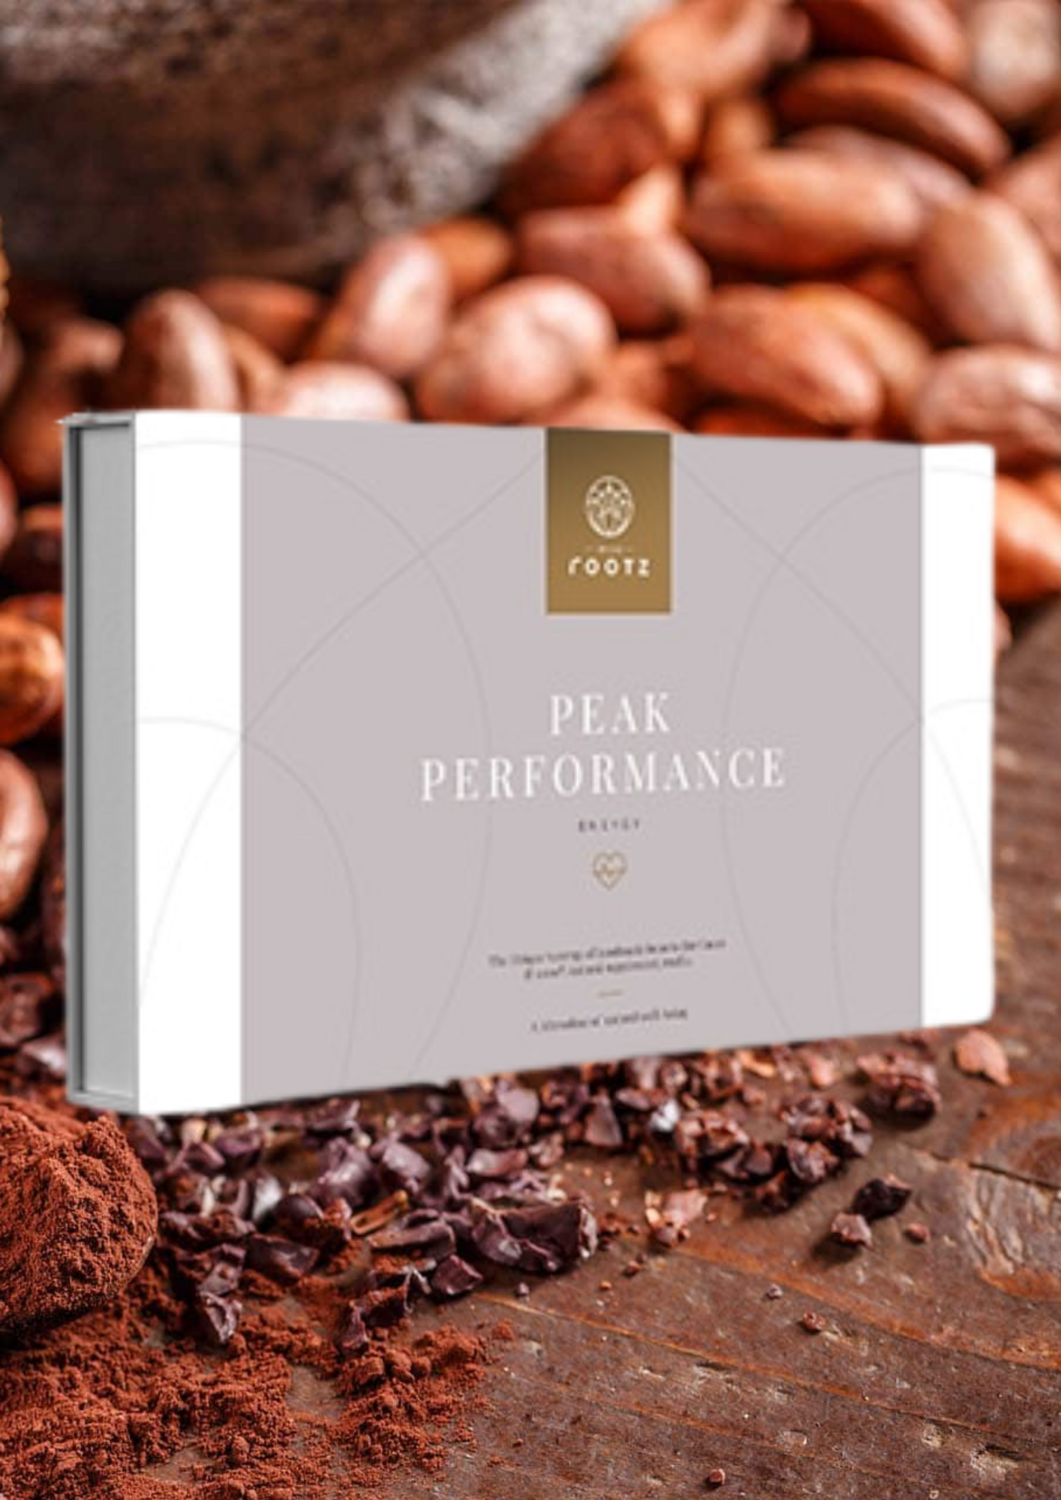 Peak Performance Maanddosering Truffel, Cacao met Cordyceps Militaris & MCT-olie